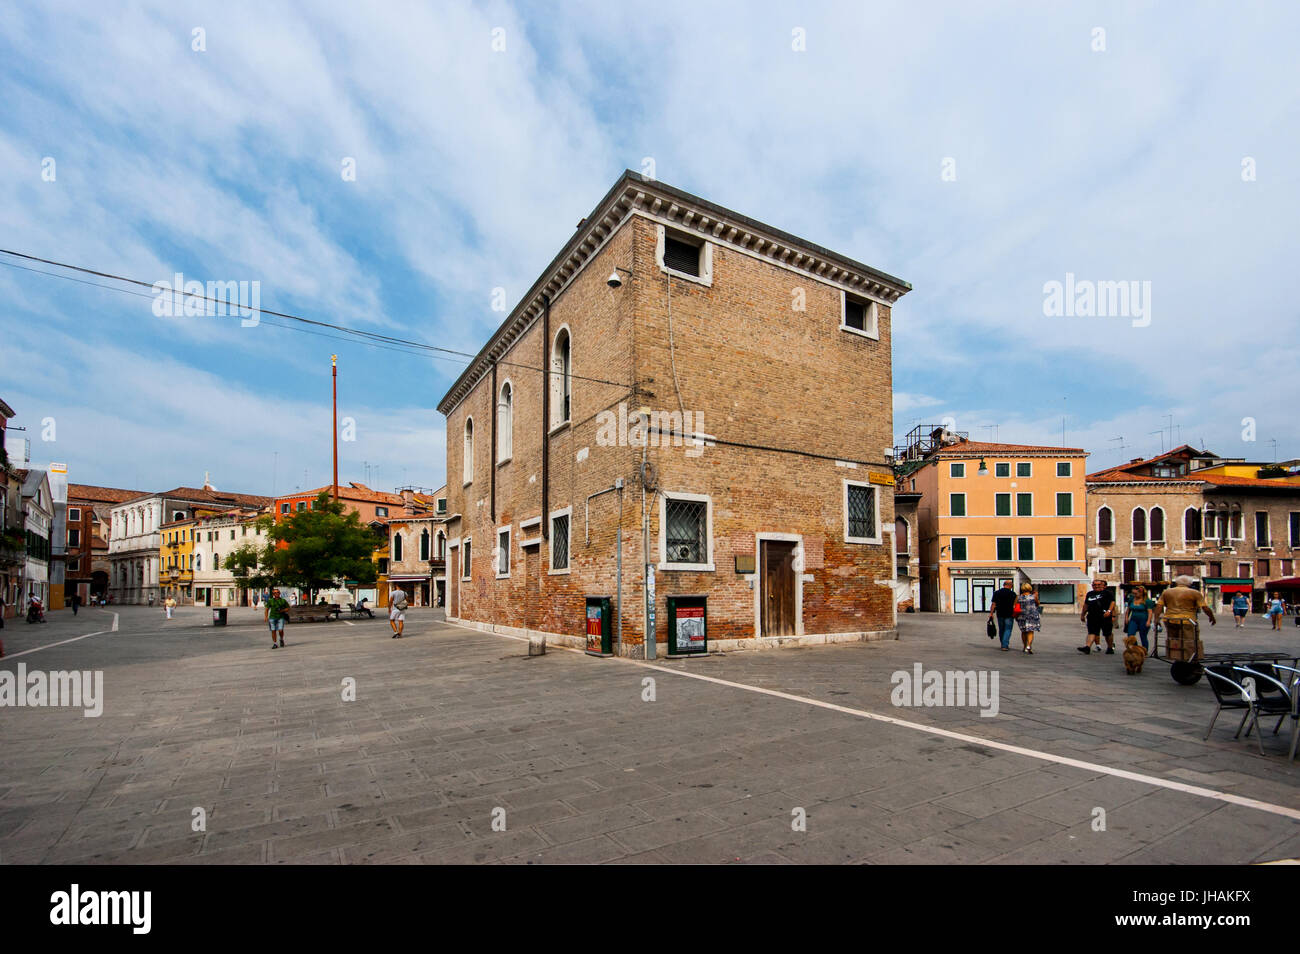 Immagini di meno conosciuta di Venezia, Italia: un vecchio palazzo nel centro di un "campo" quadrato nella zona di Dorsoduro Foto Stock